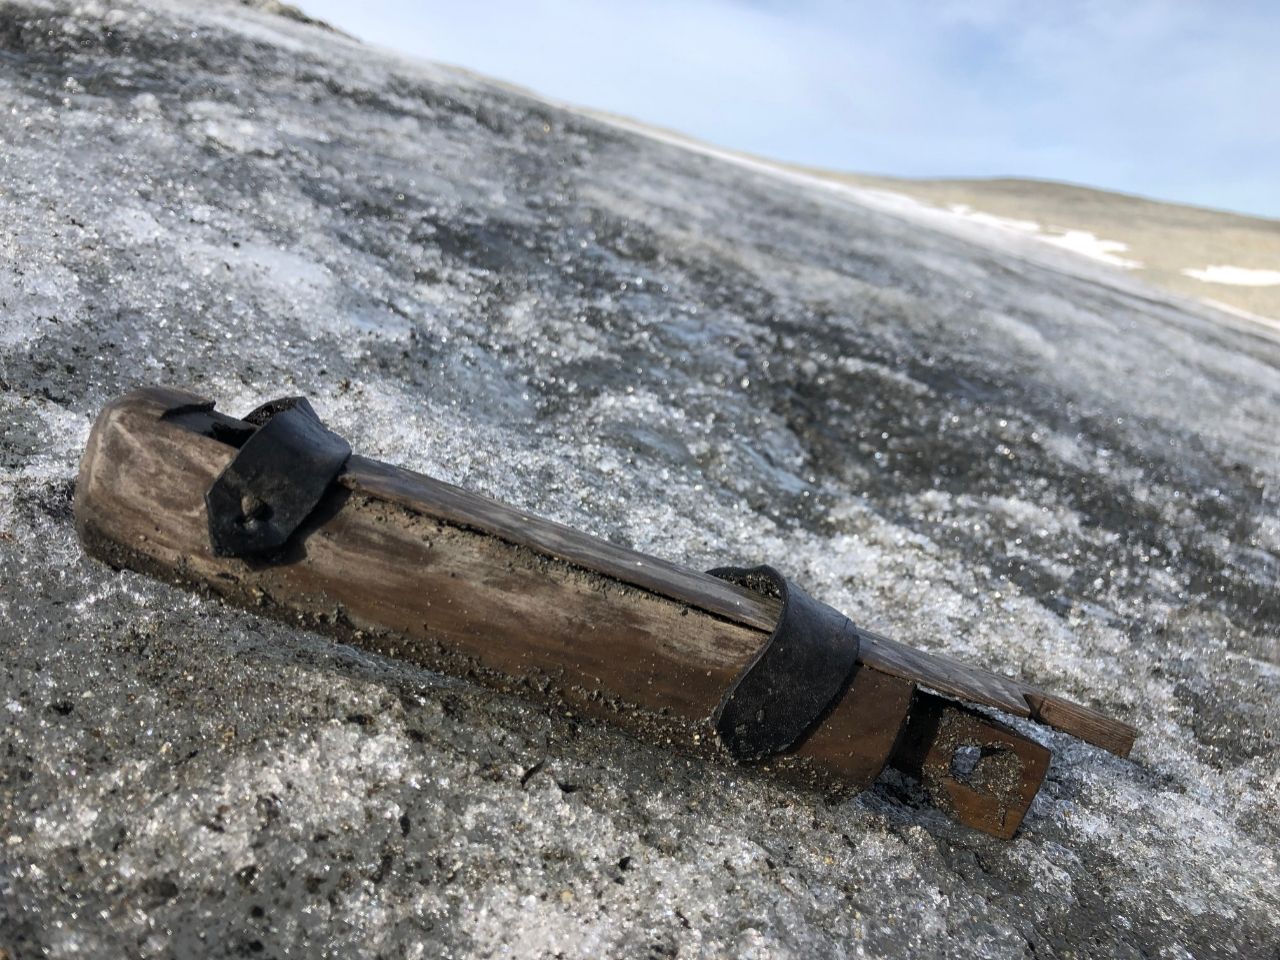 پگھلنے والی برف ناروے 5 میں وائکنگ دور کے کھوئے ہوئے پاس اور قدیم نمونے کو ظاہر کرتی ہے۔